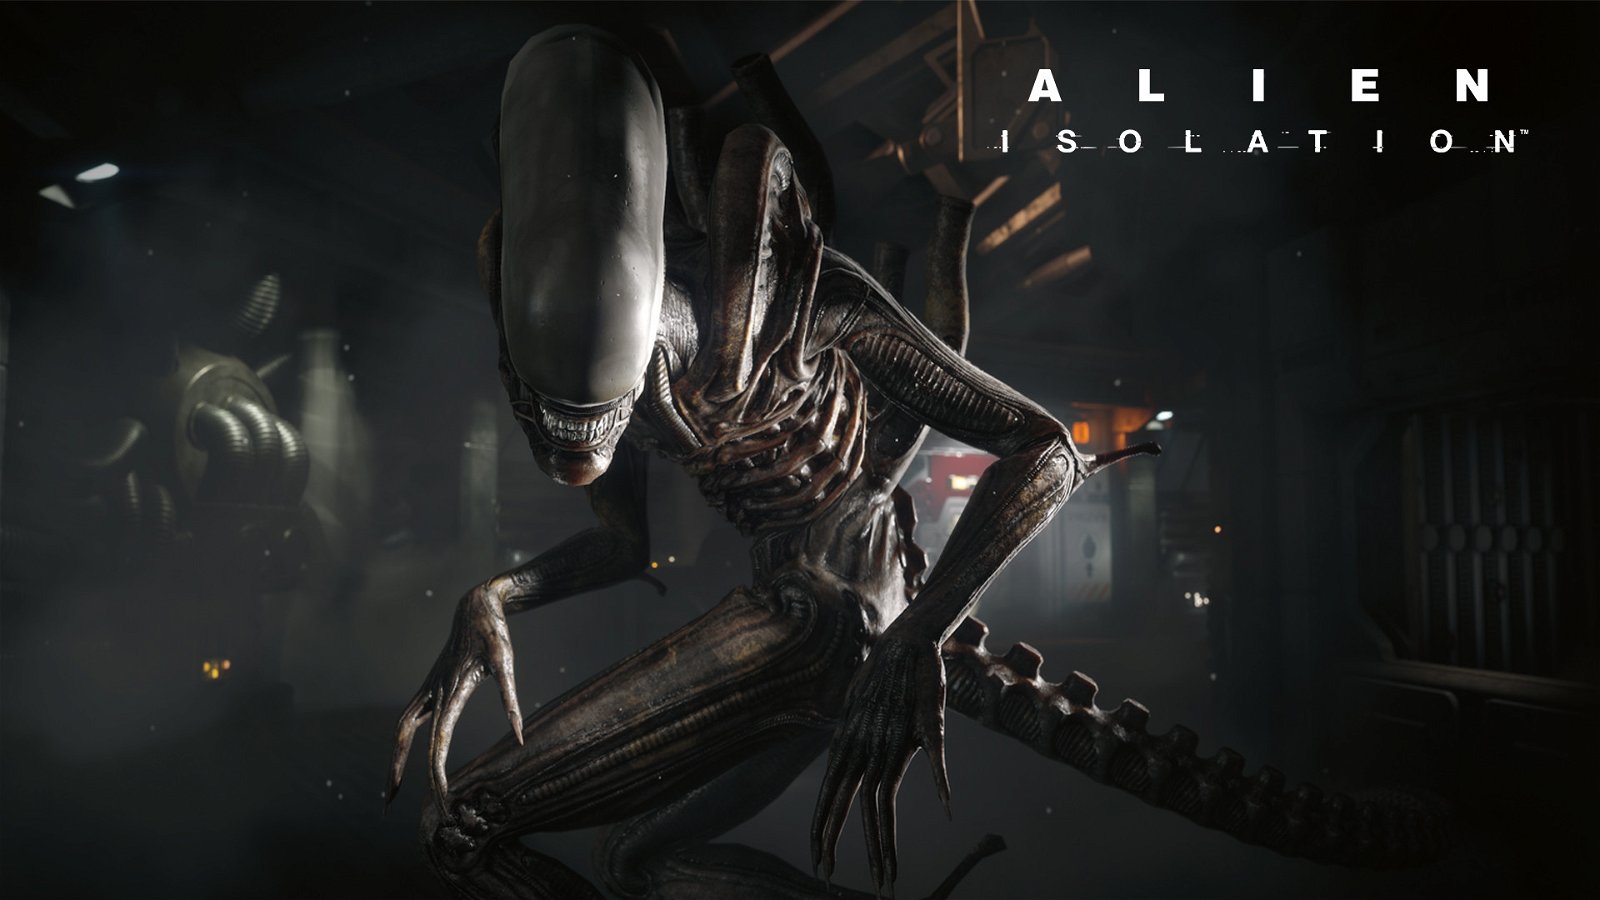 Alien Isolation diventa un vero incubo, grazie ai fan